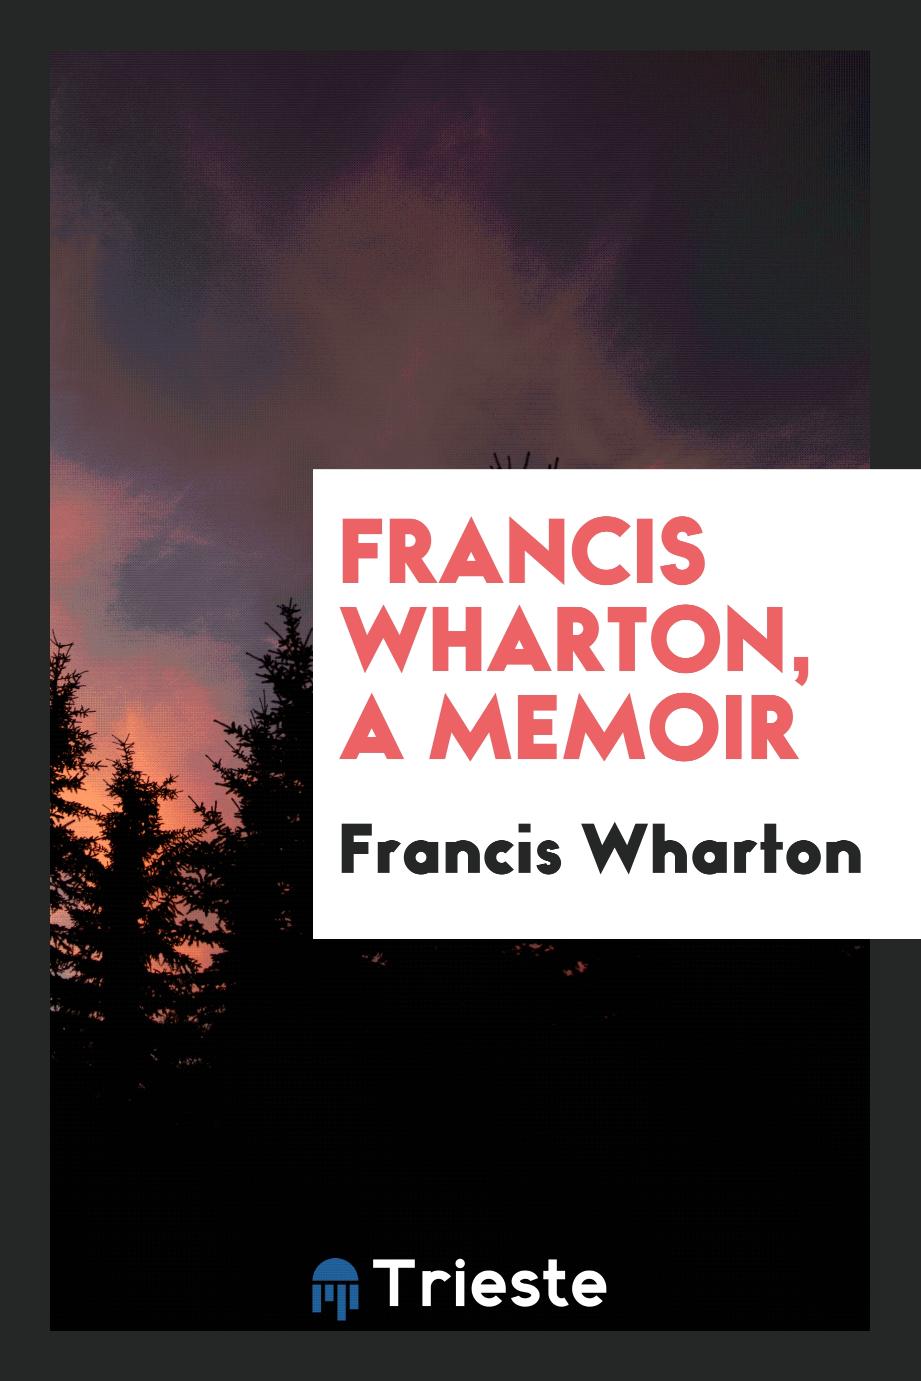 Francis Wharton, a memoir